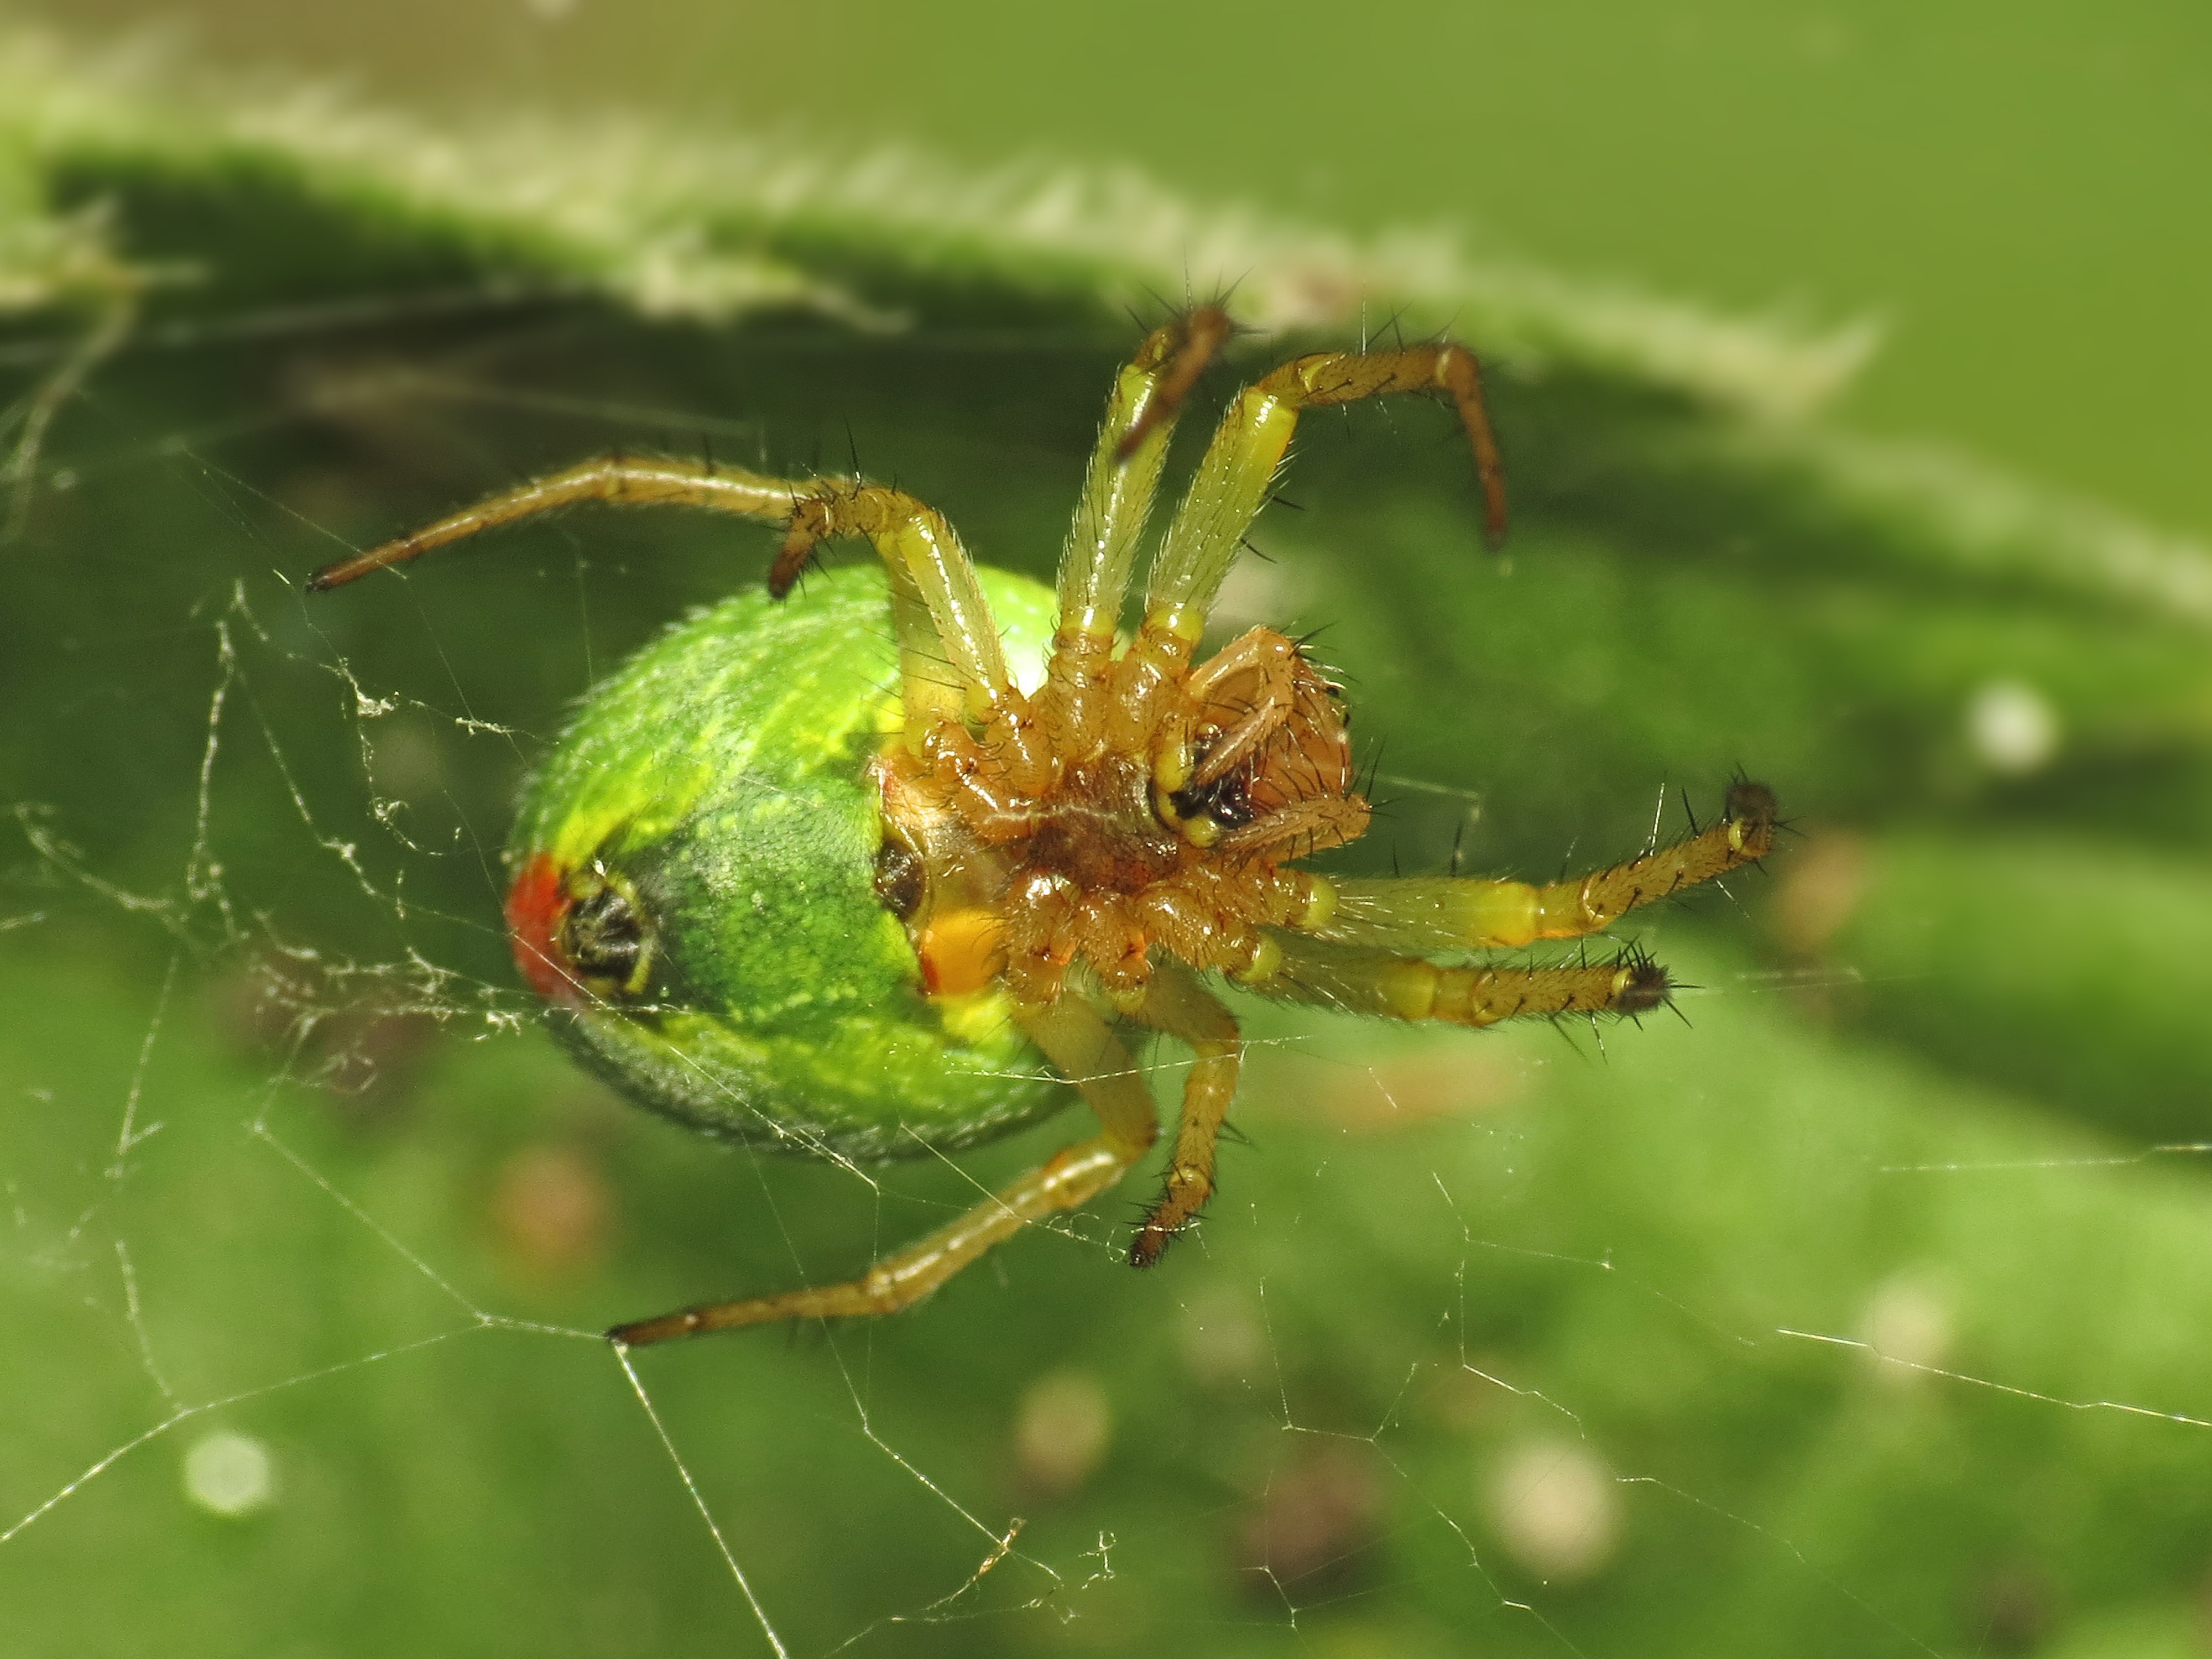 Салатовый паук в россии фото с названиями и описанием